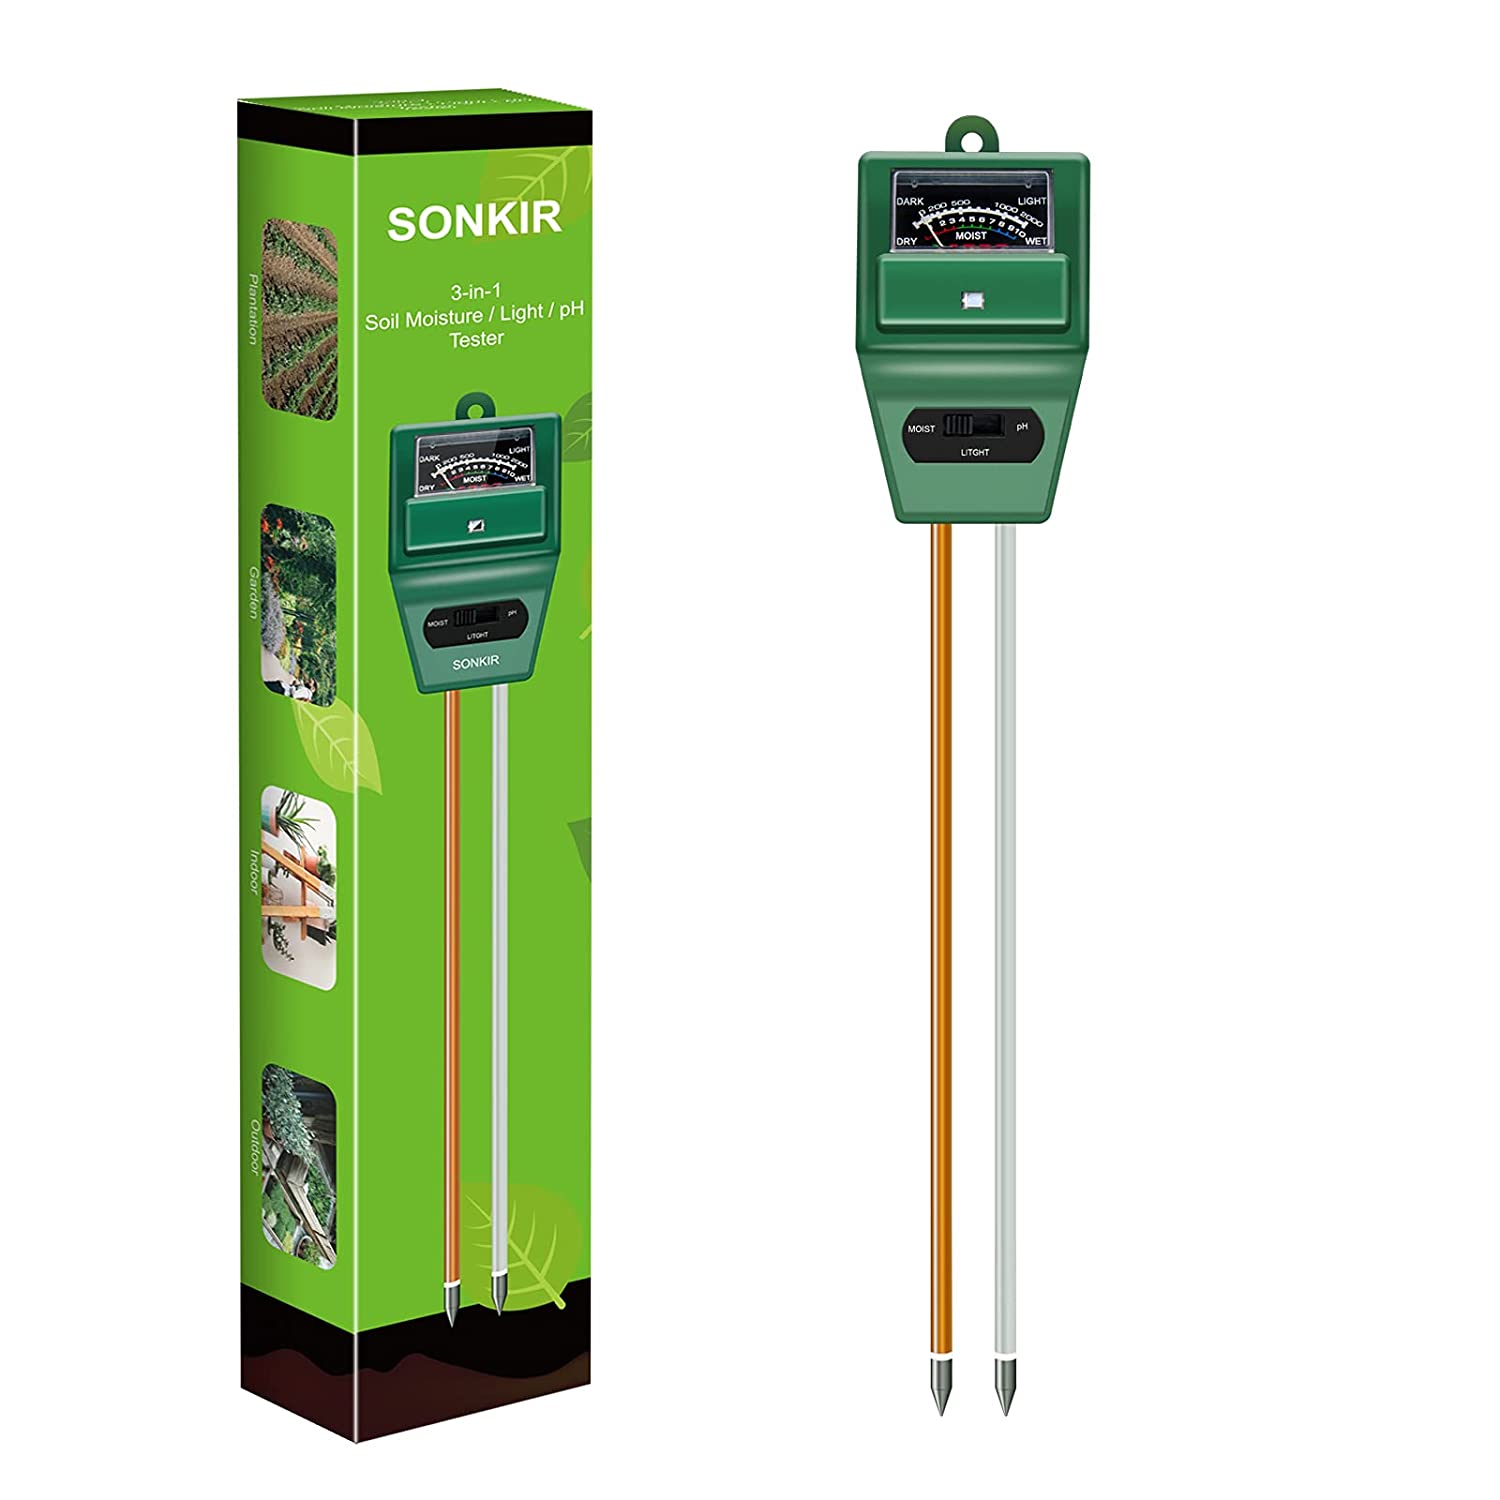 best soil pH tester - Sonkir Soil pH Meter, MS02 3-in-1 Soil Moisture/Light/pH Tester  Gardening Tool Kits  